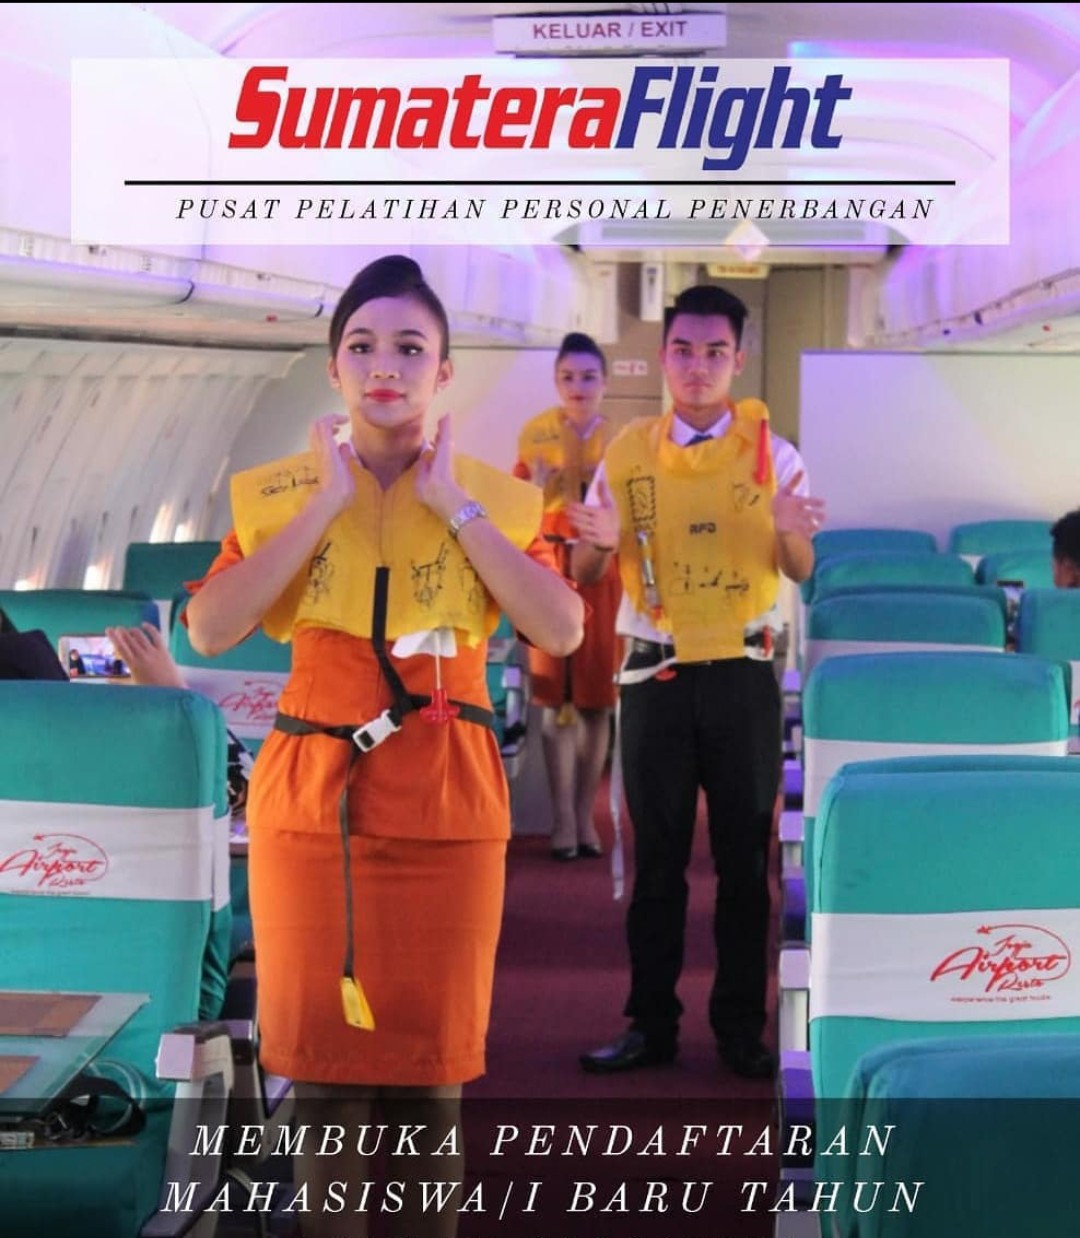 Sekolah Pramugari Sumatera Flight Education Center – Sekolah Pramugari  Sumatera Flight Education Center